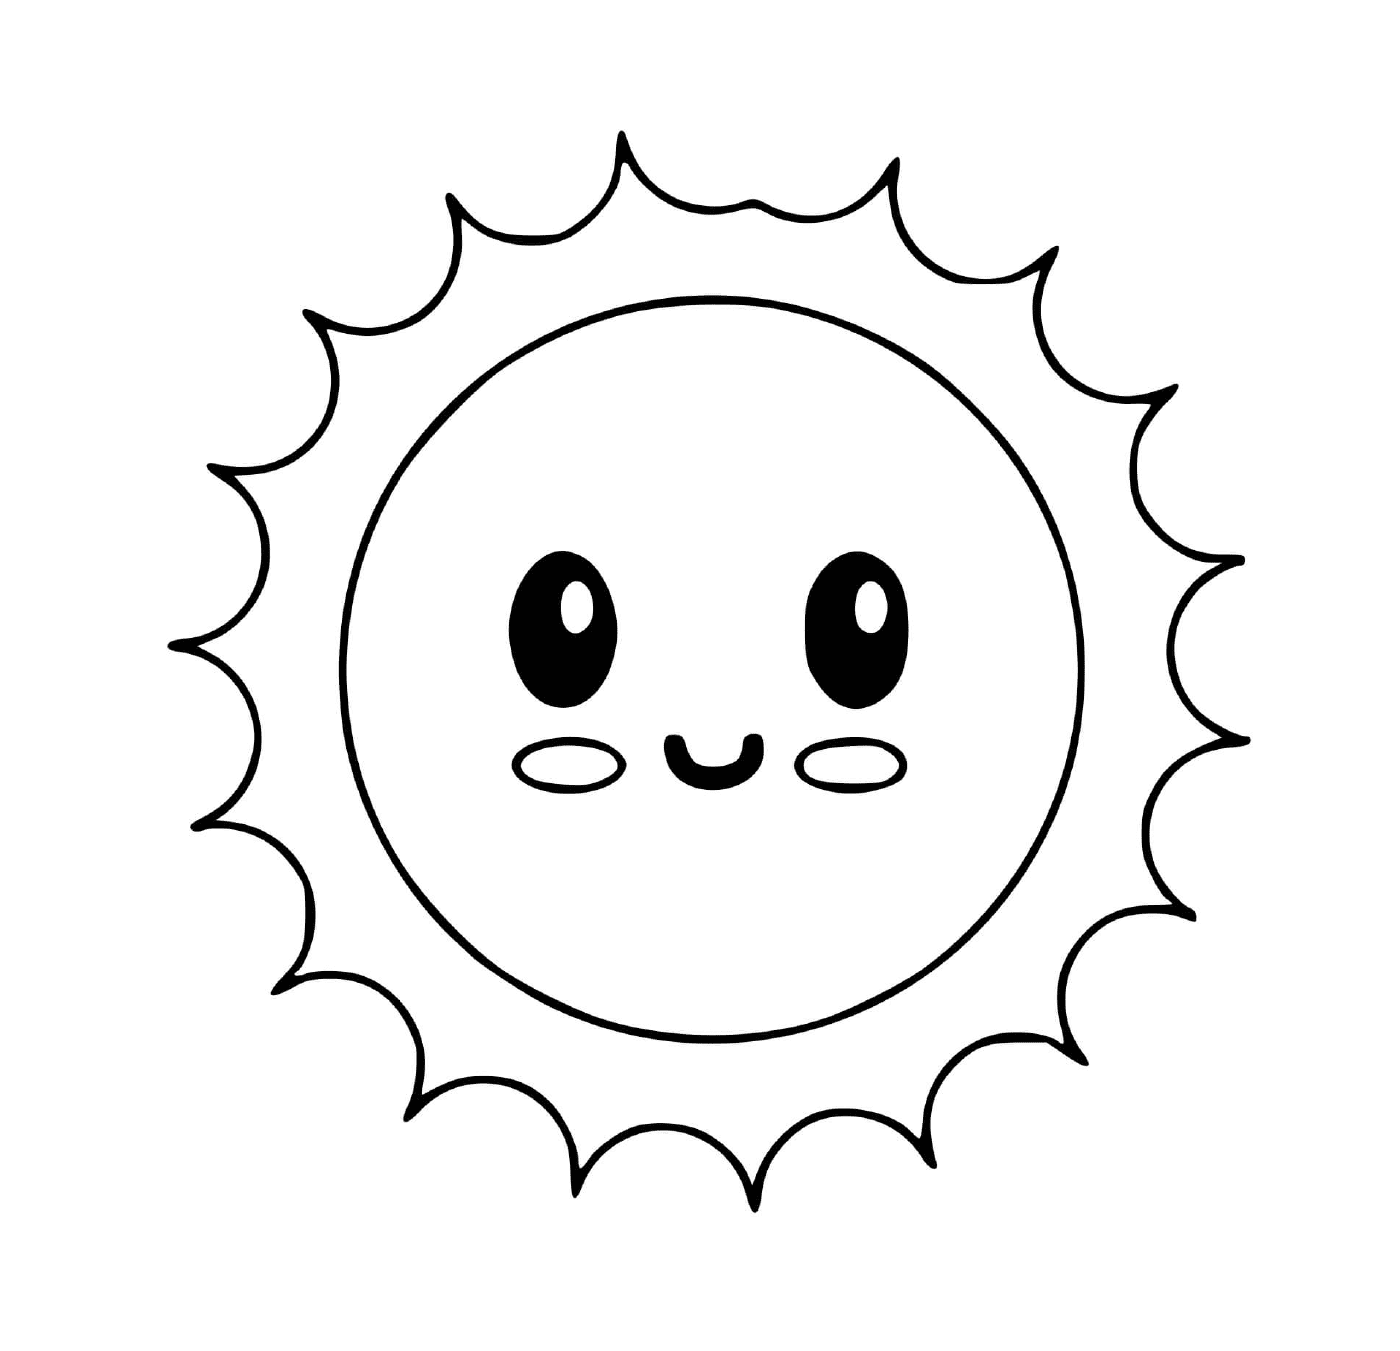  Small sun star kawaii 